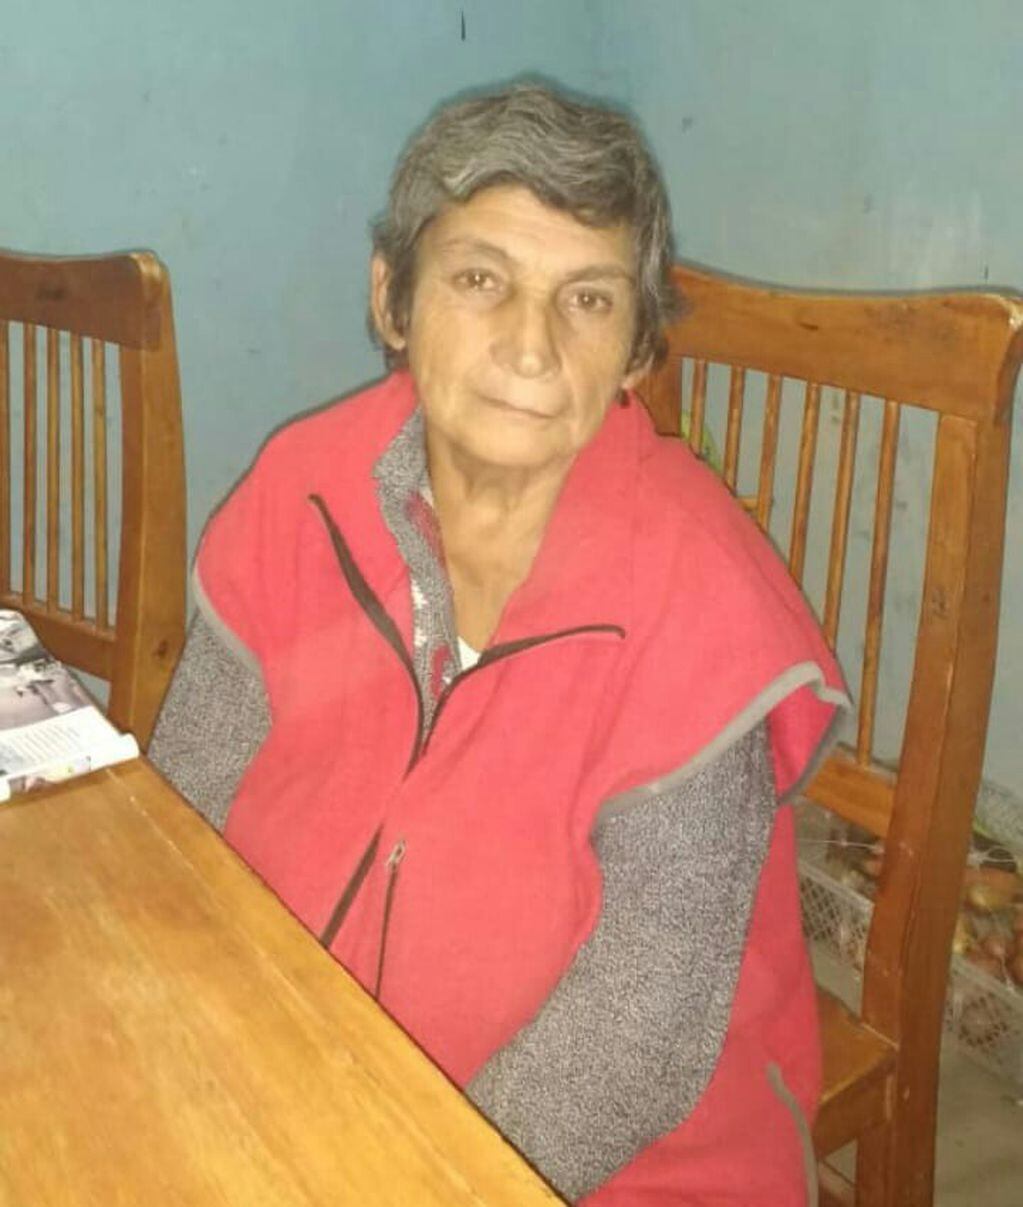 Señora desaparecida  en Gualeguay
Crédito: PE